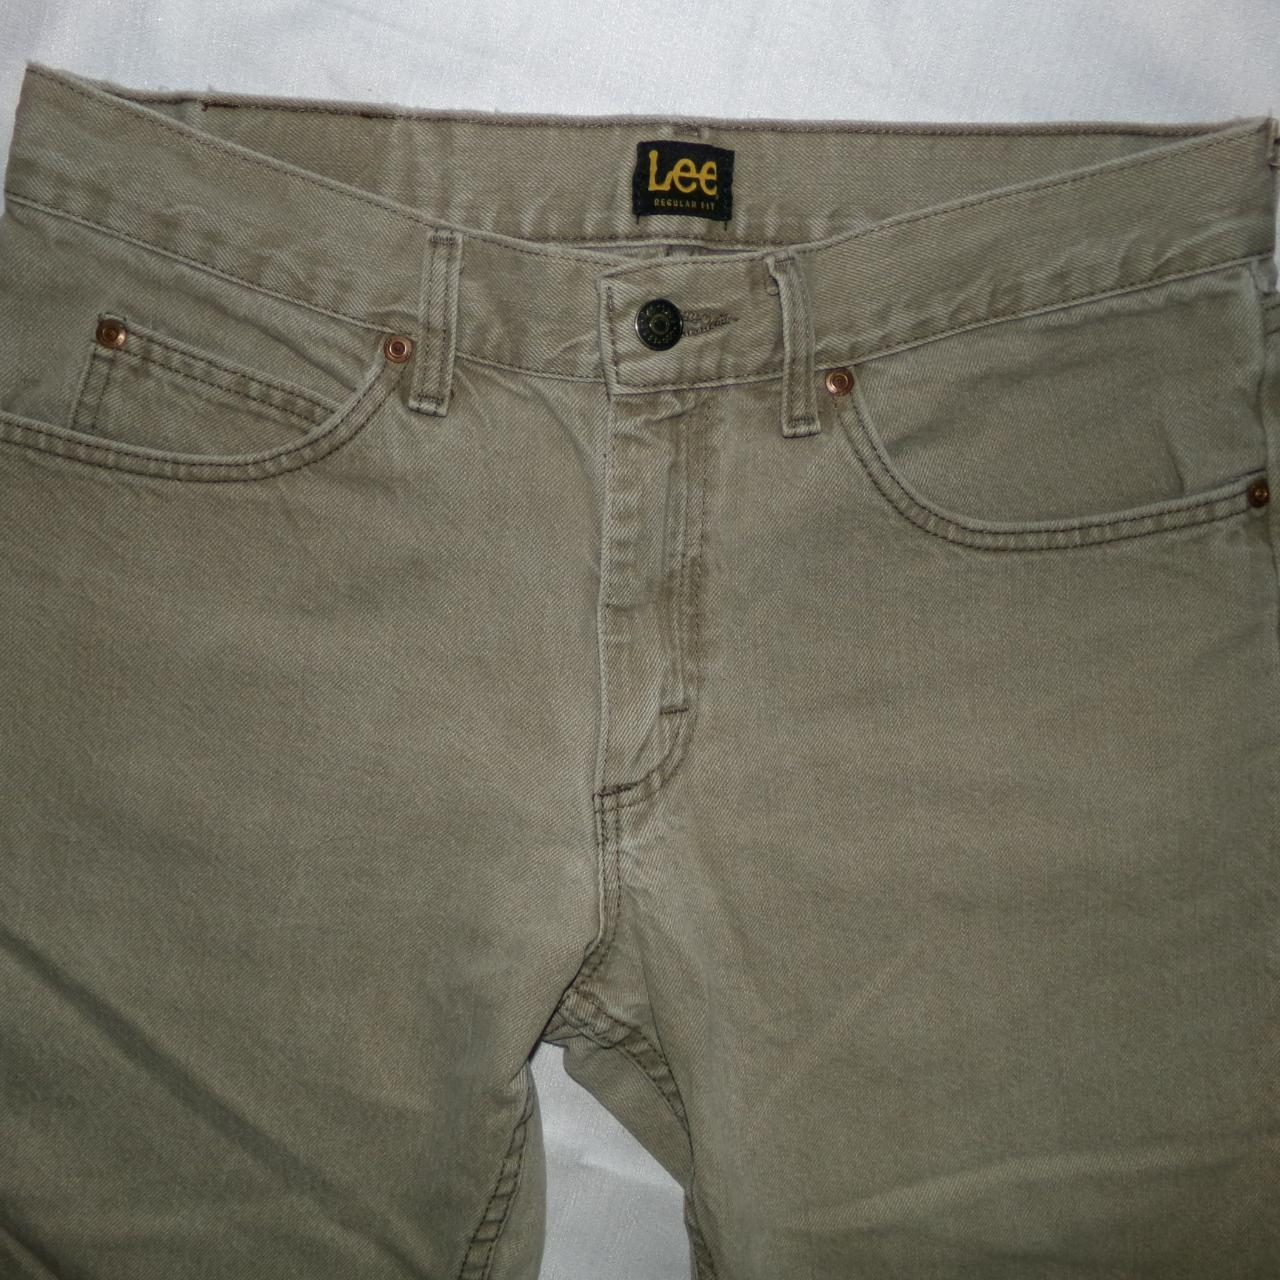 Lee regular fit jeans 32 X 30 #lee #vintage... - Depop